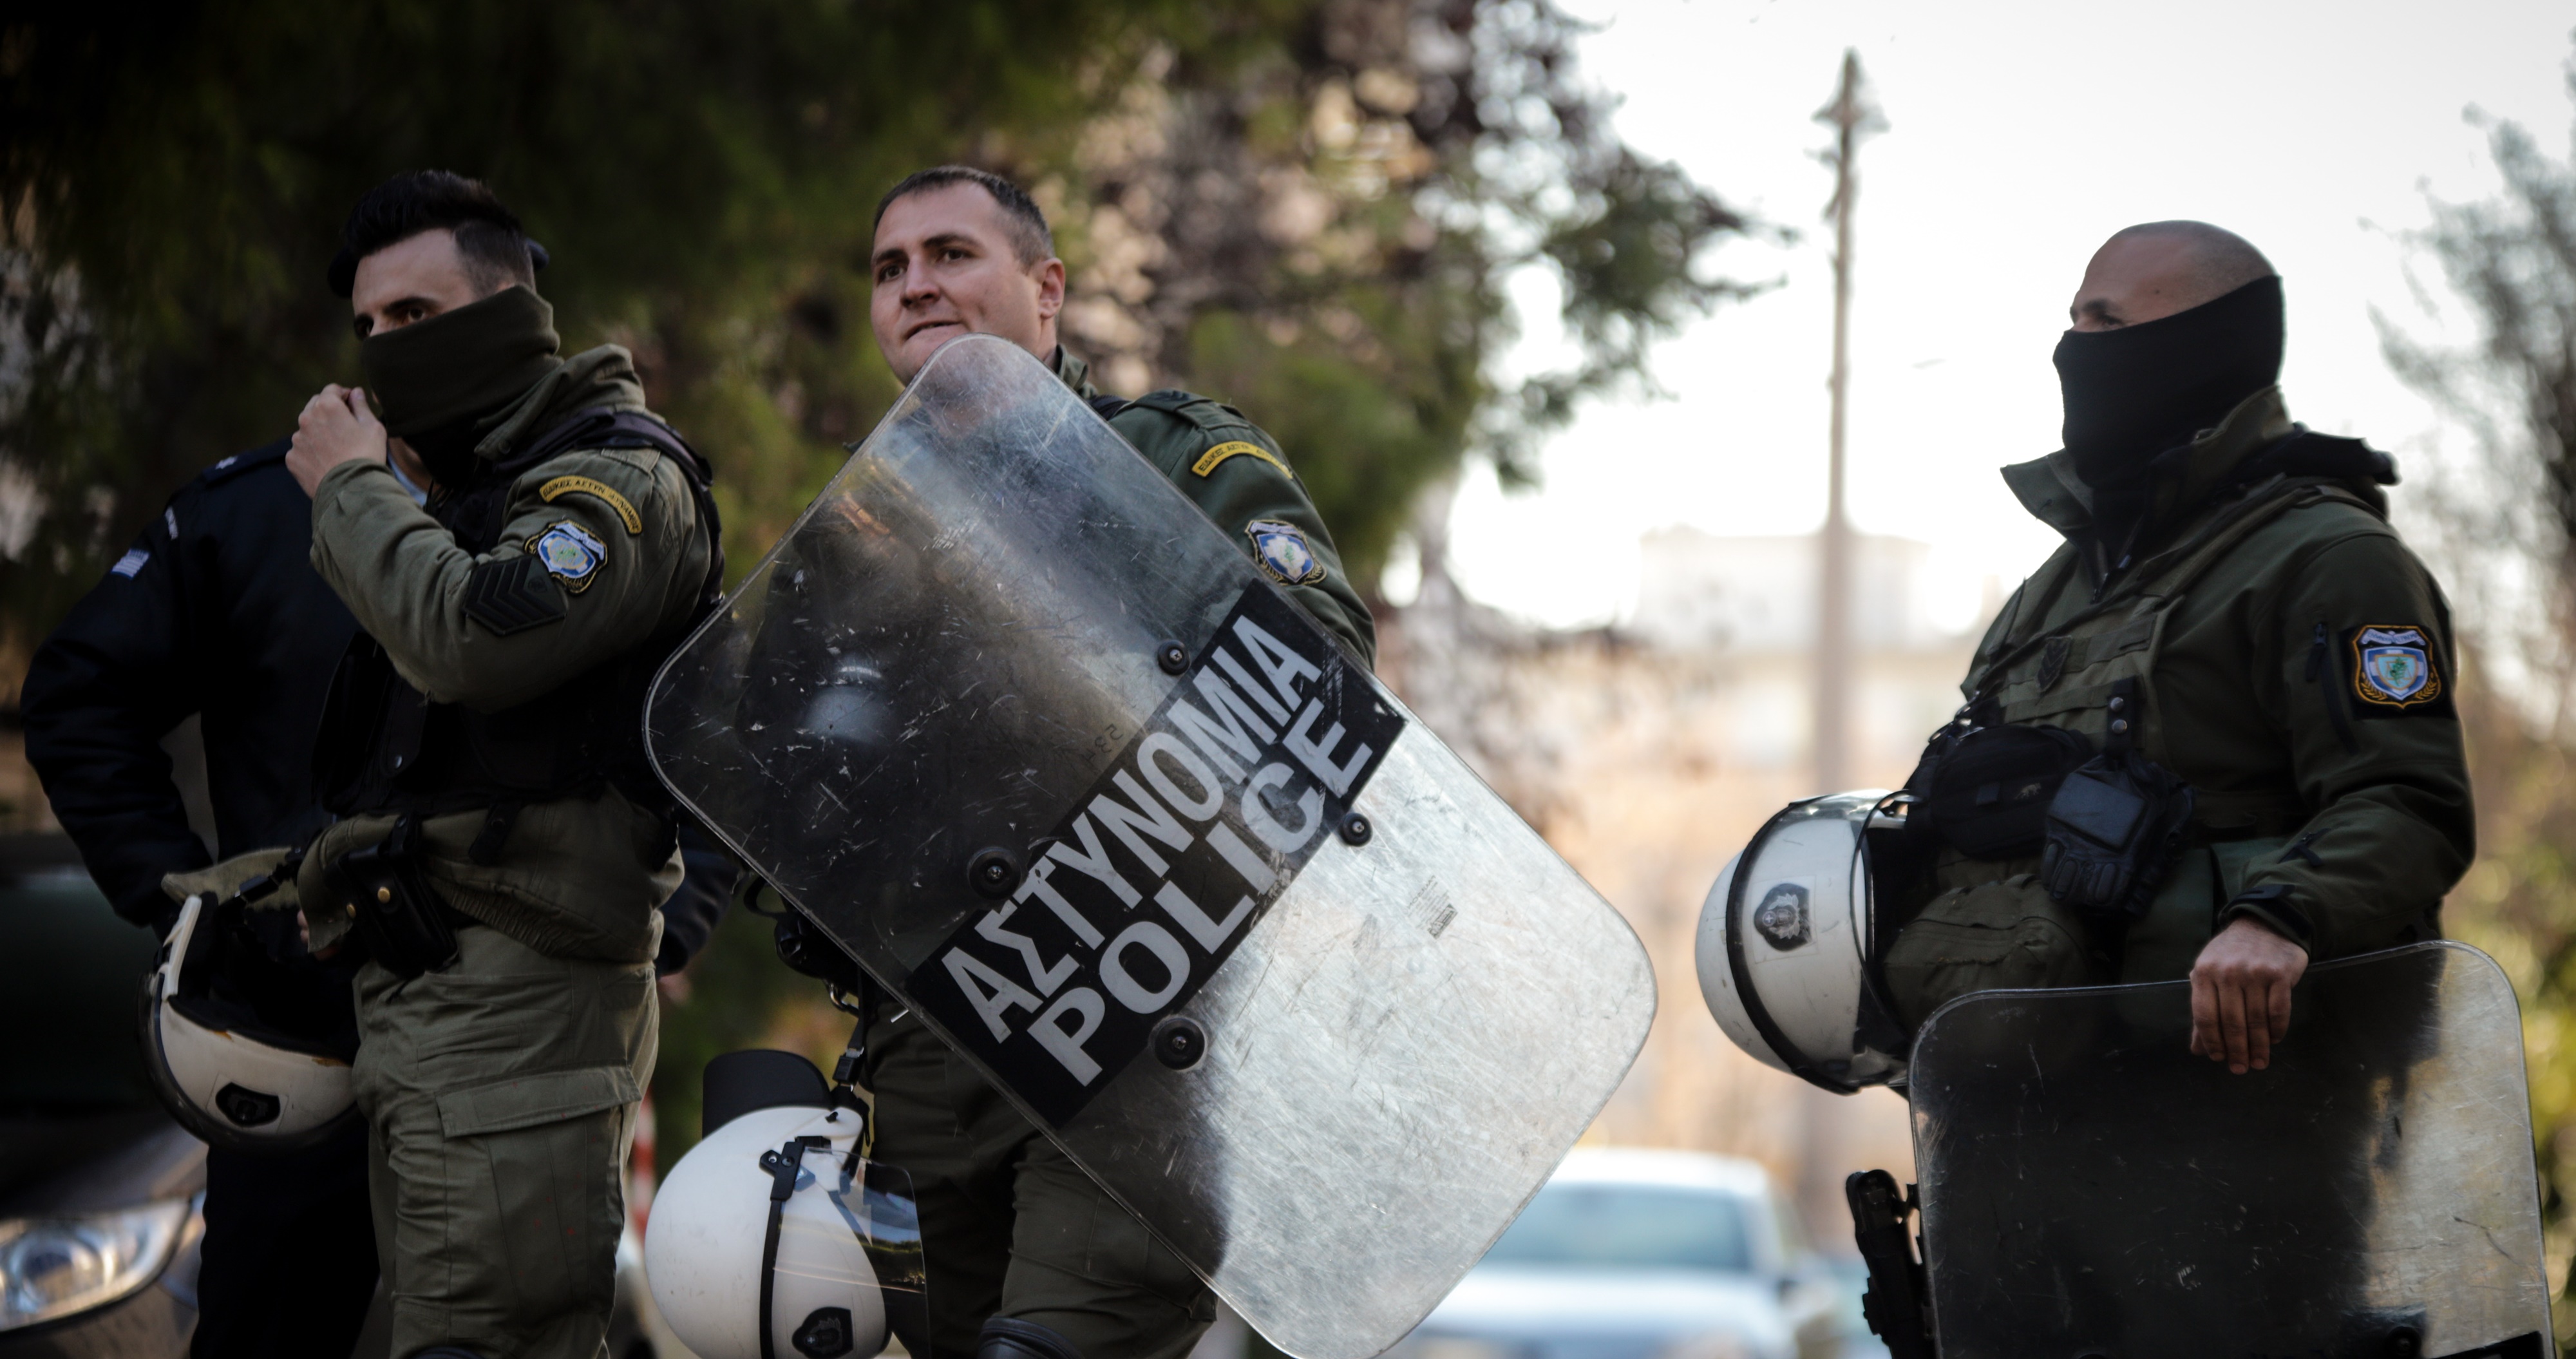 Αστυνομικός Σύνταγμα – ΣΥΡΙΖΑ: Παραδόθηκε ο συνδικαλιστής που εμπόδισε τη σύλληψη